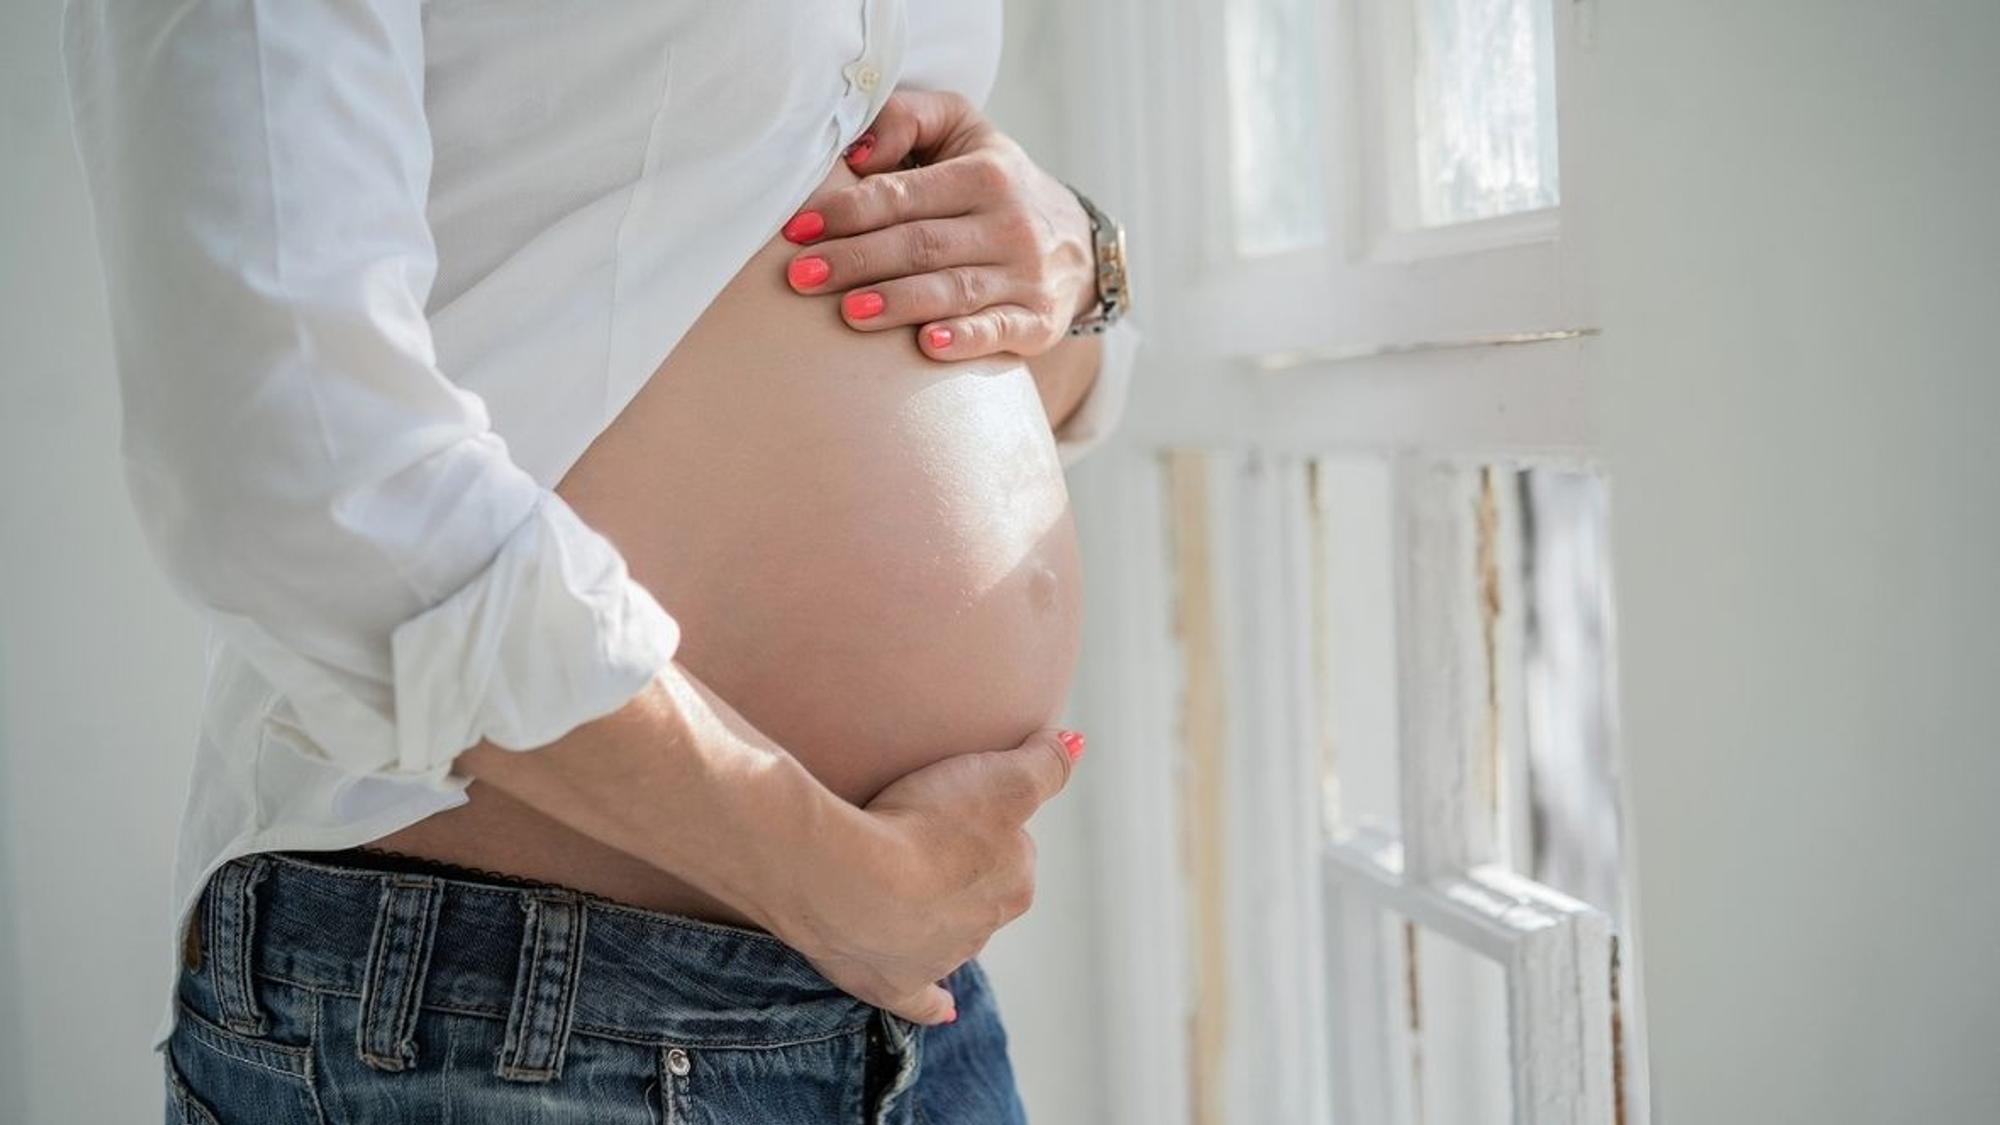 Muttermund unter Geburt selbst tasten | Körperbewusstsein, Blasensprung,  NFP - YouTube